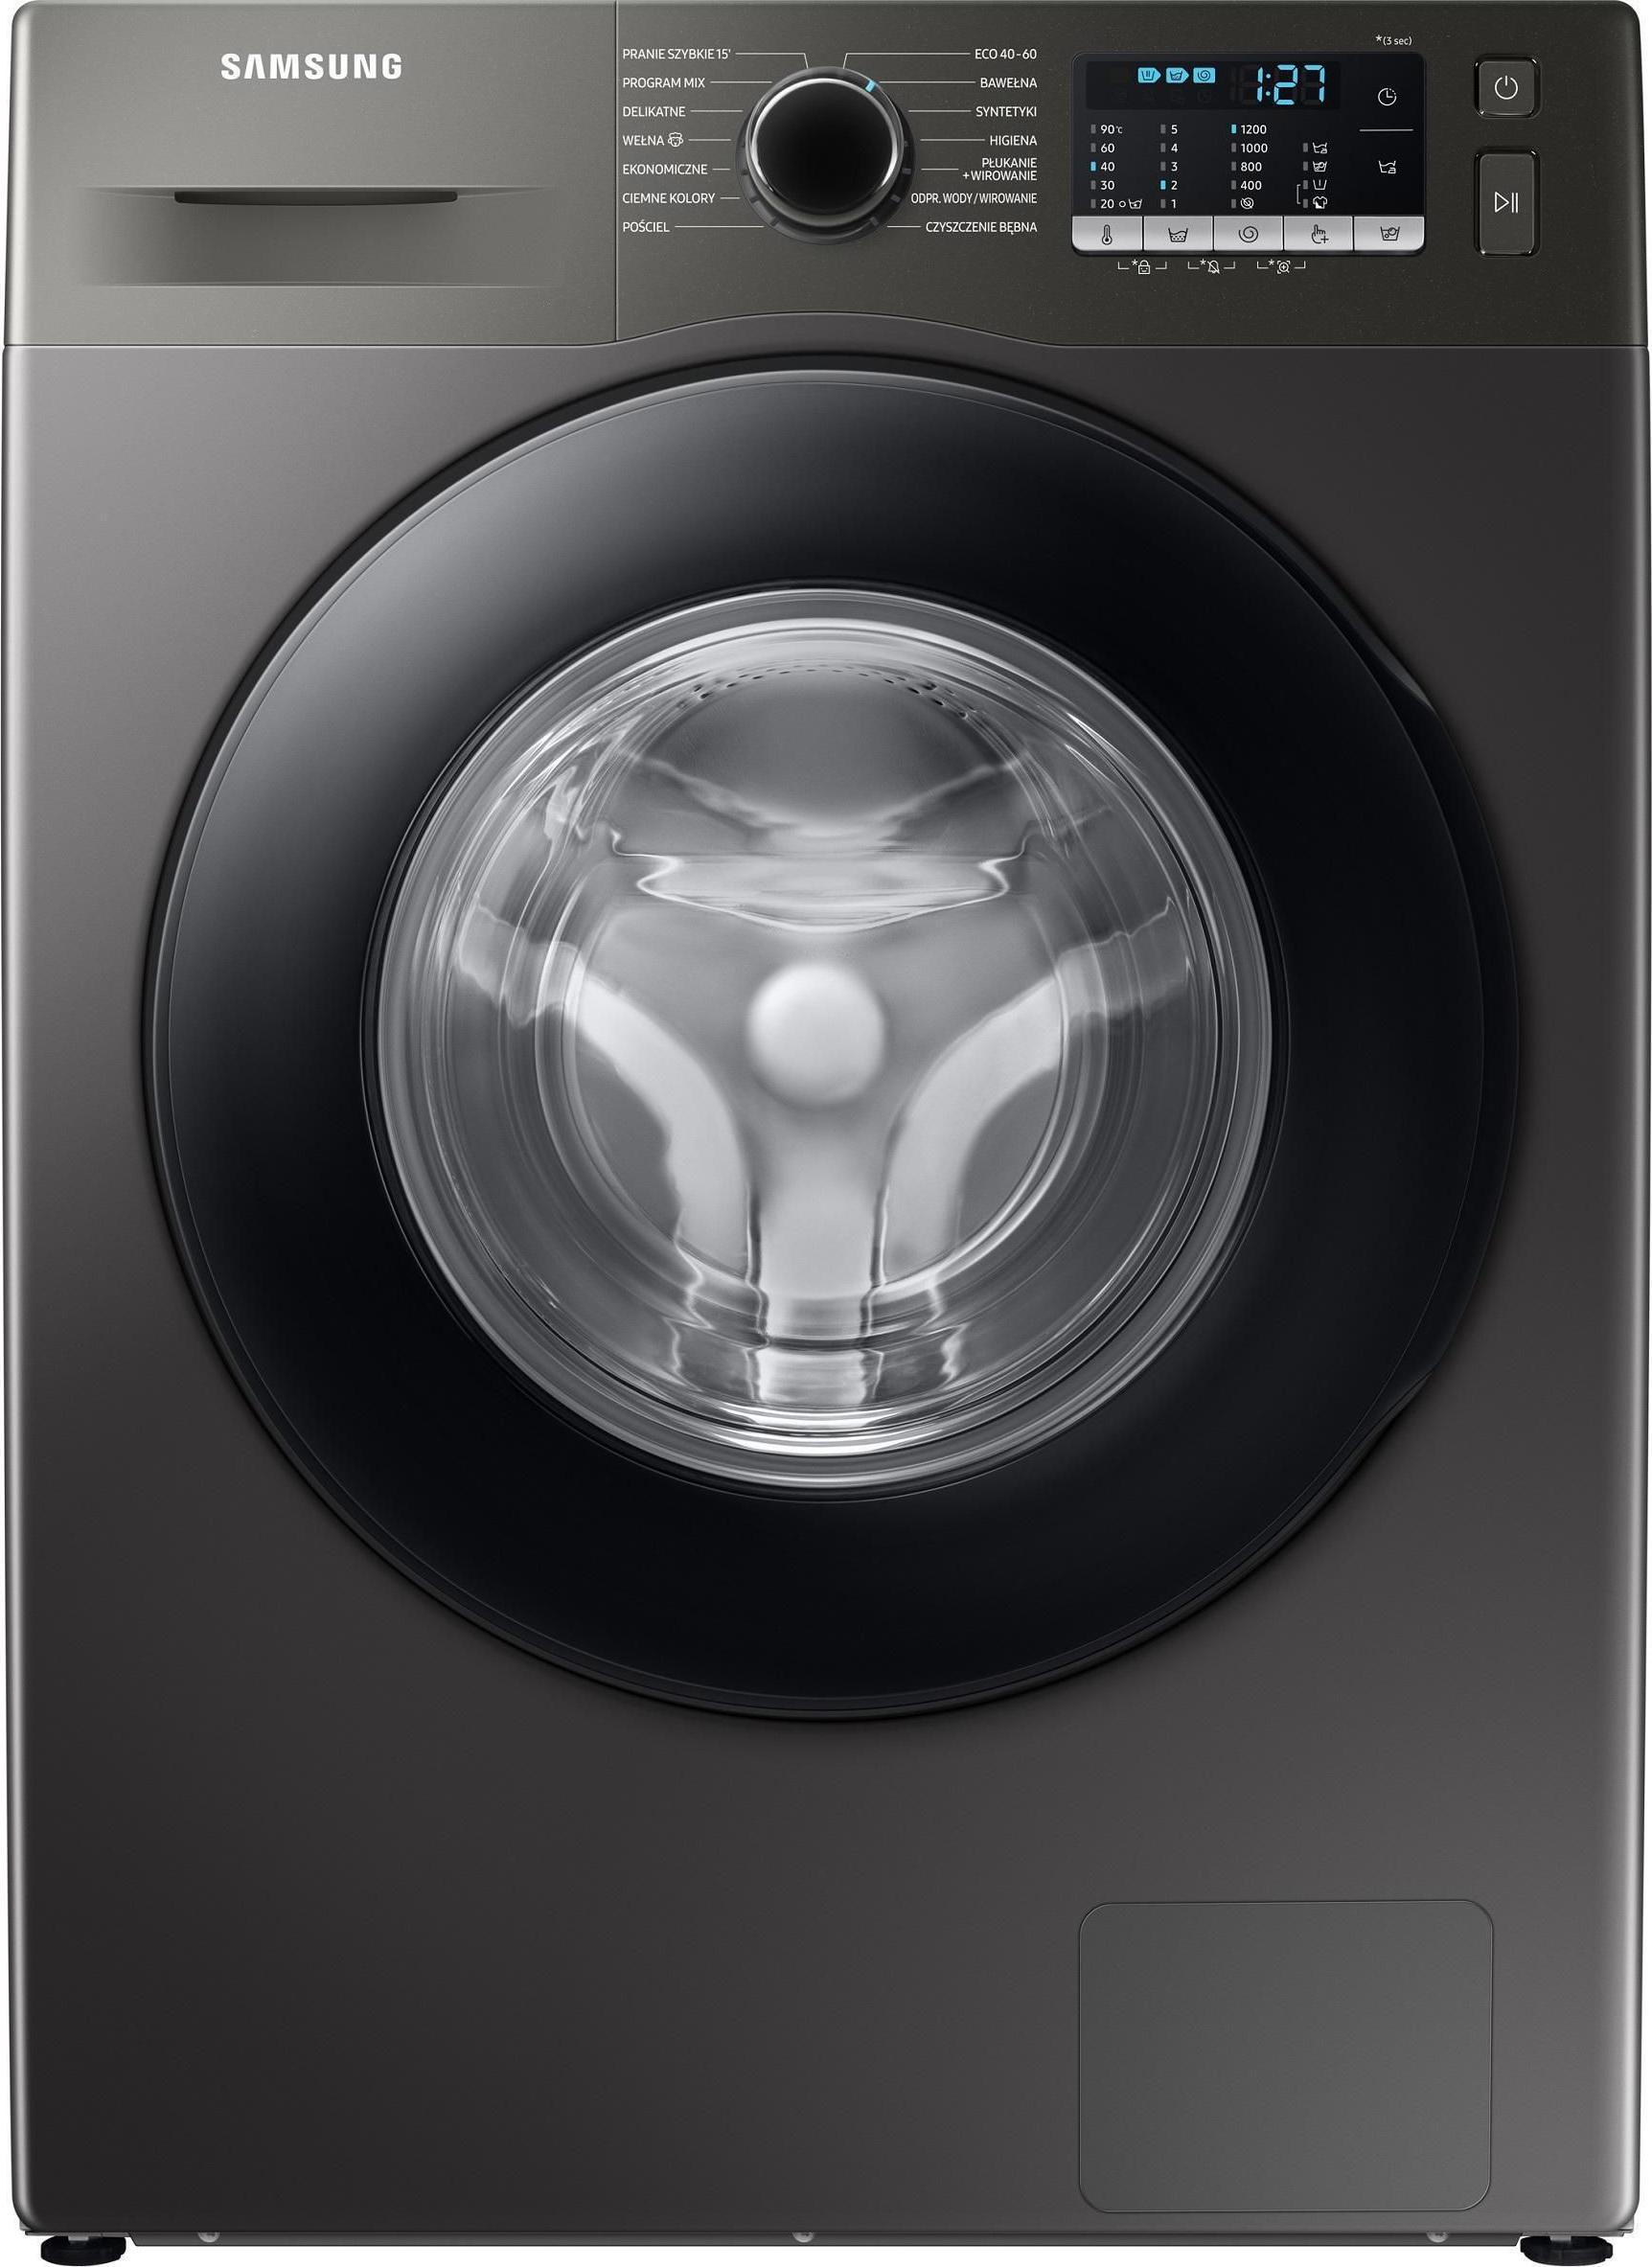 Masini de spalat rufe - Mașină de spălat rufe Samsung WW70TA026AX,
Gri,
7 kg,Cu functie de abur